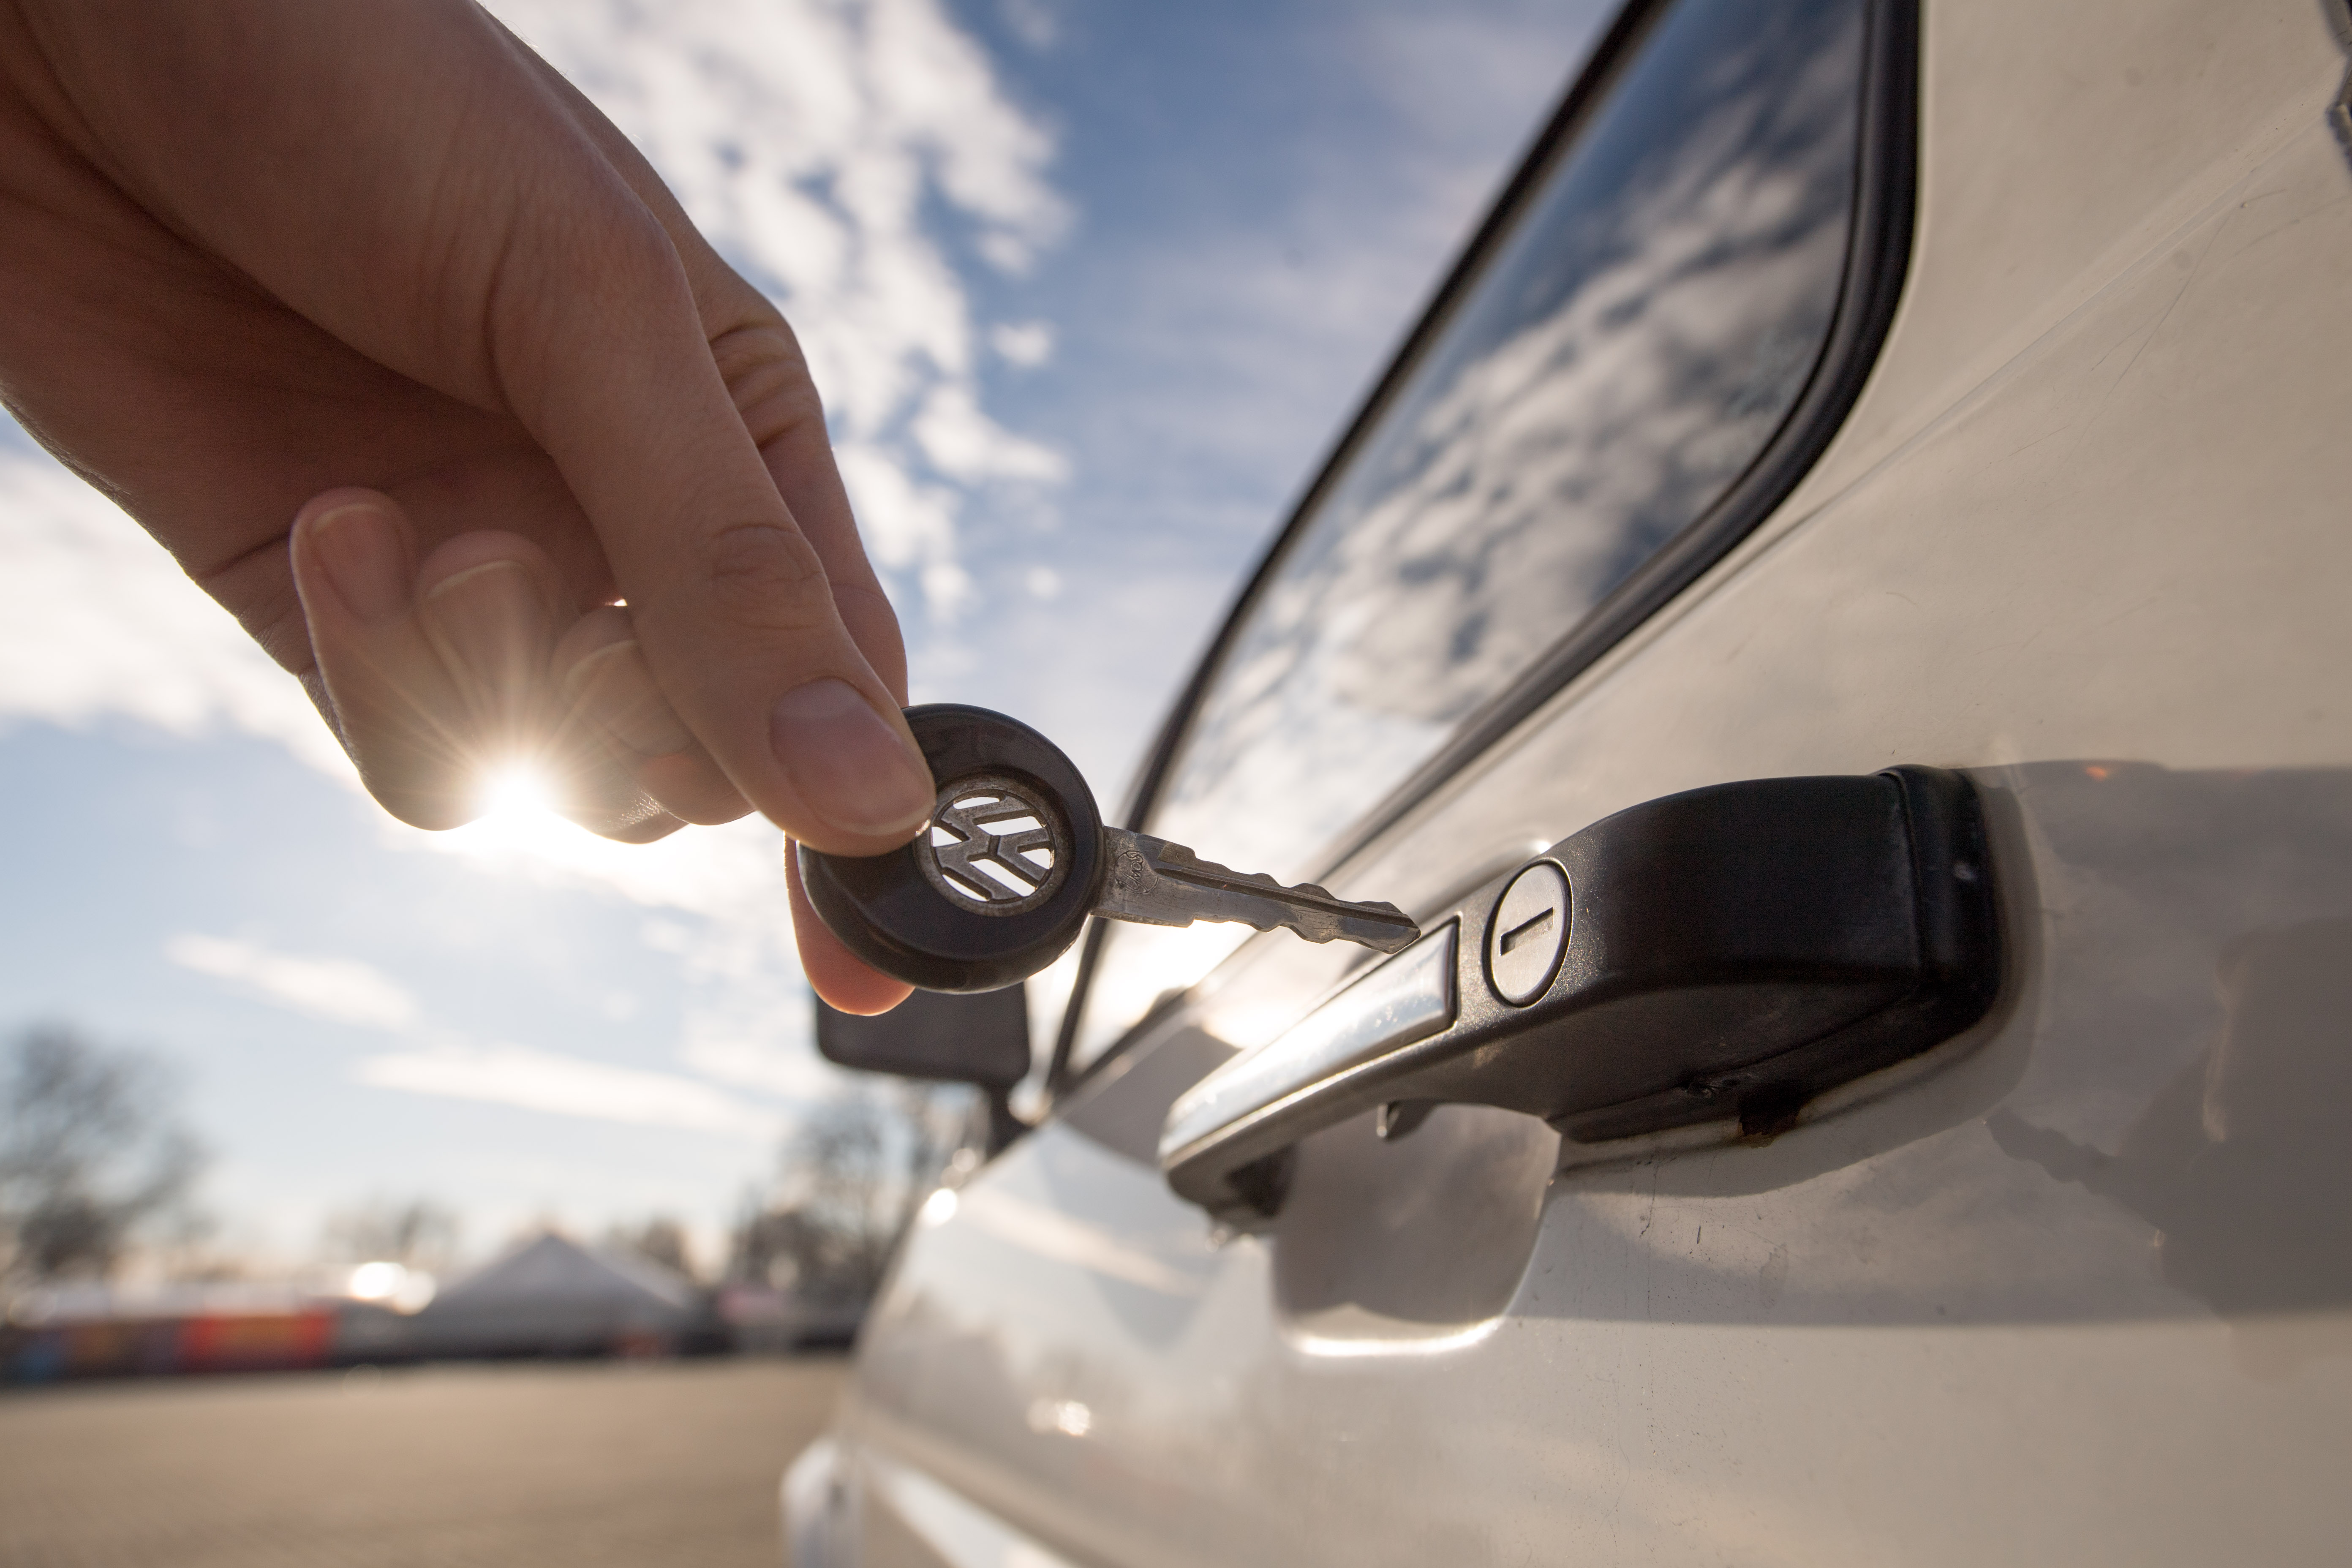 Sondaj Bosch: două treimi dintre șoferii din Germania consideră incomodă utilizarea cheilor auto